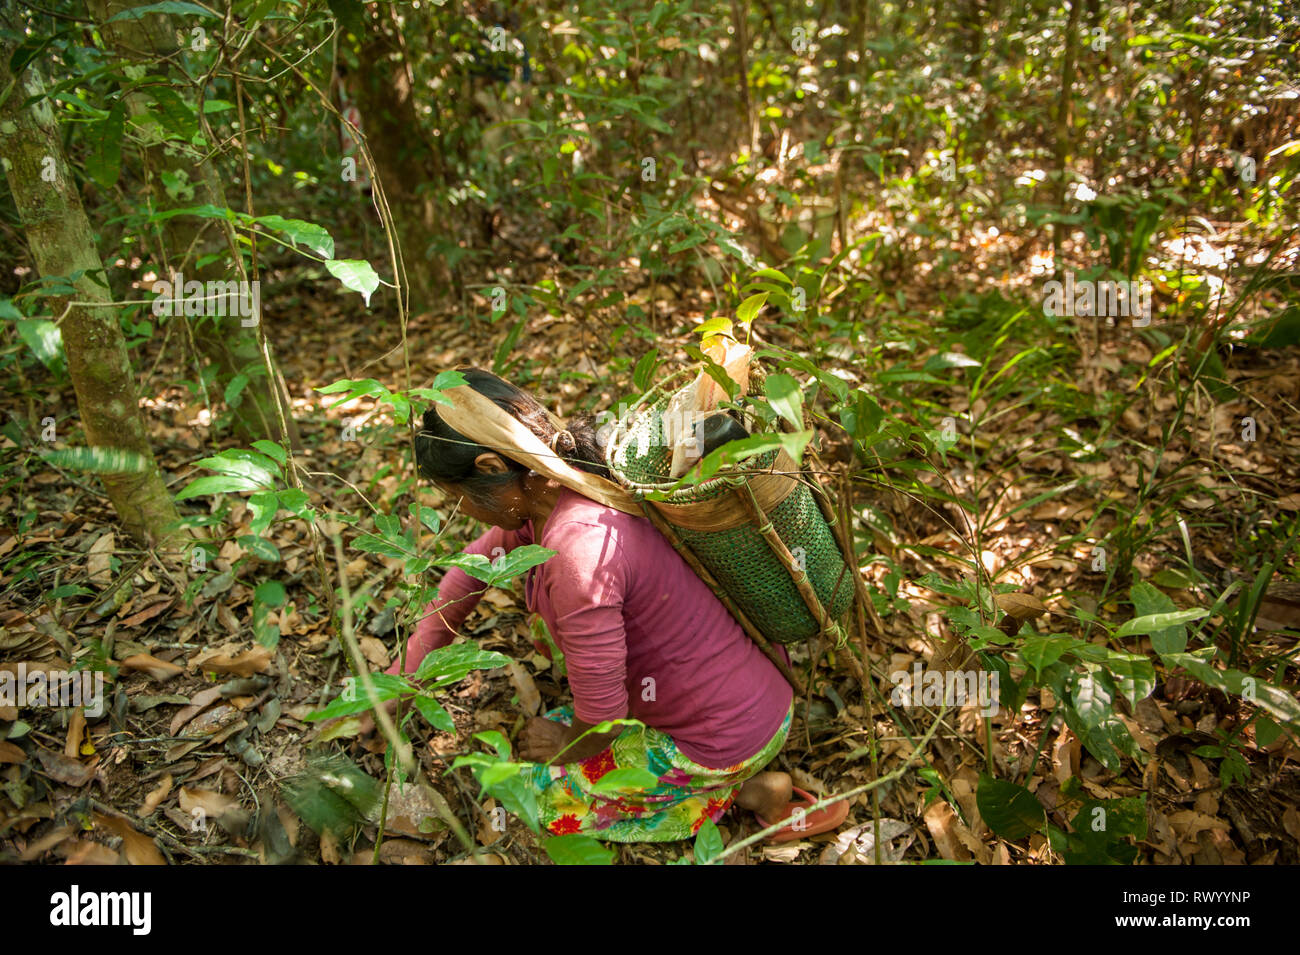 El estado de Mato Grosso, Brasil. Una mujer india Kayapo con un diseño tradicional, canasta, pero hecha de plástico vinculante, recoge la cinta Cumaru (Dipterix odorata Foto de stock